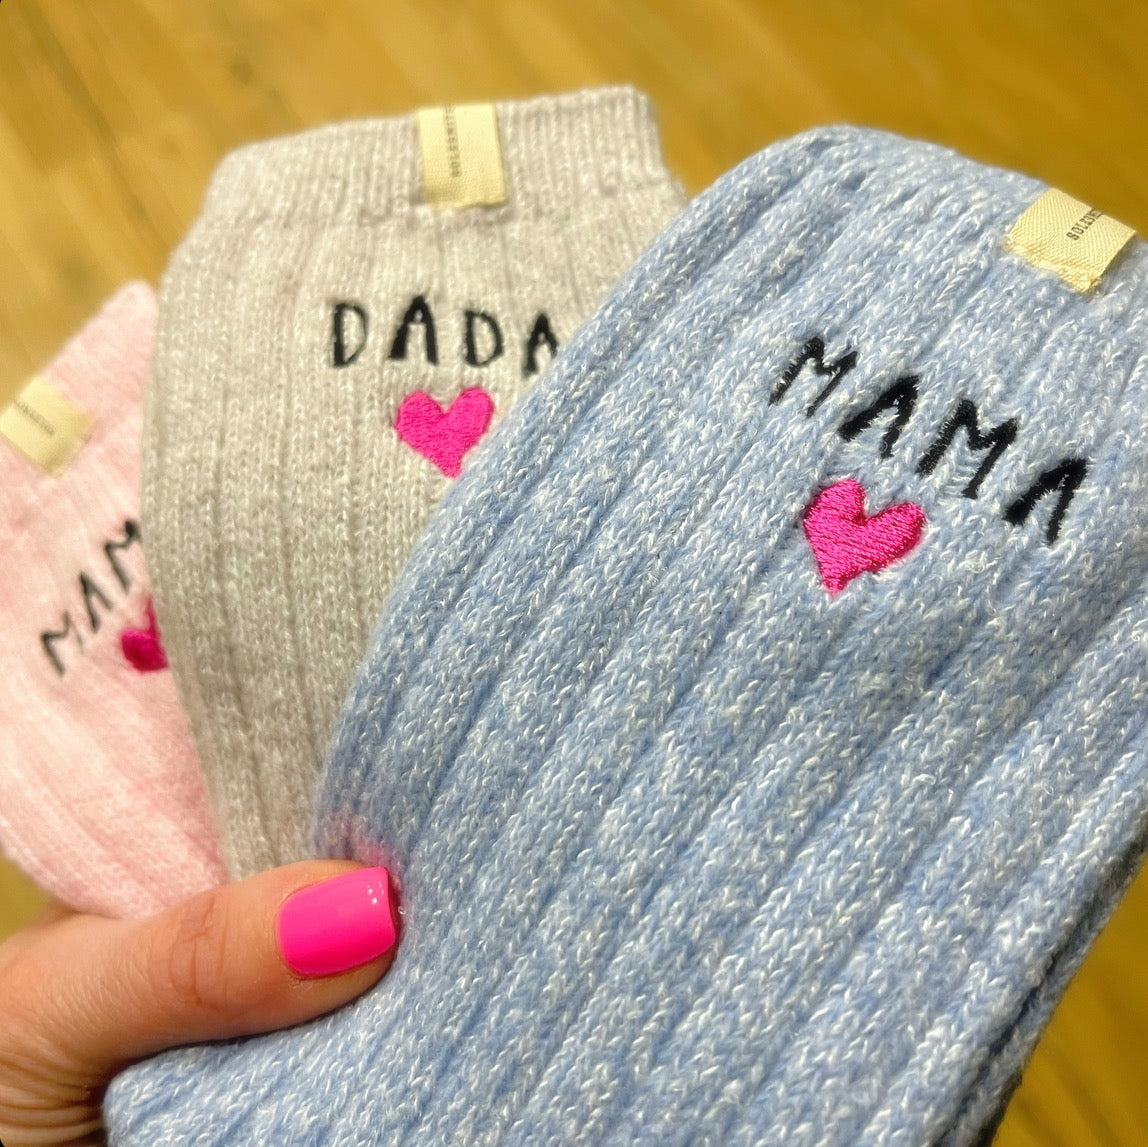 Mummy/Daddy Snug Socks